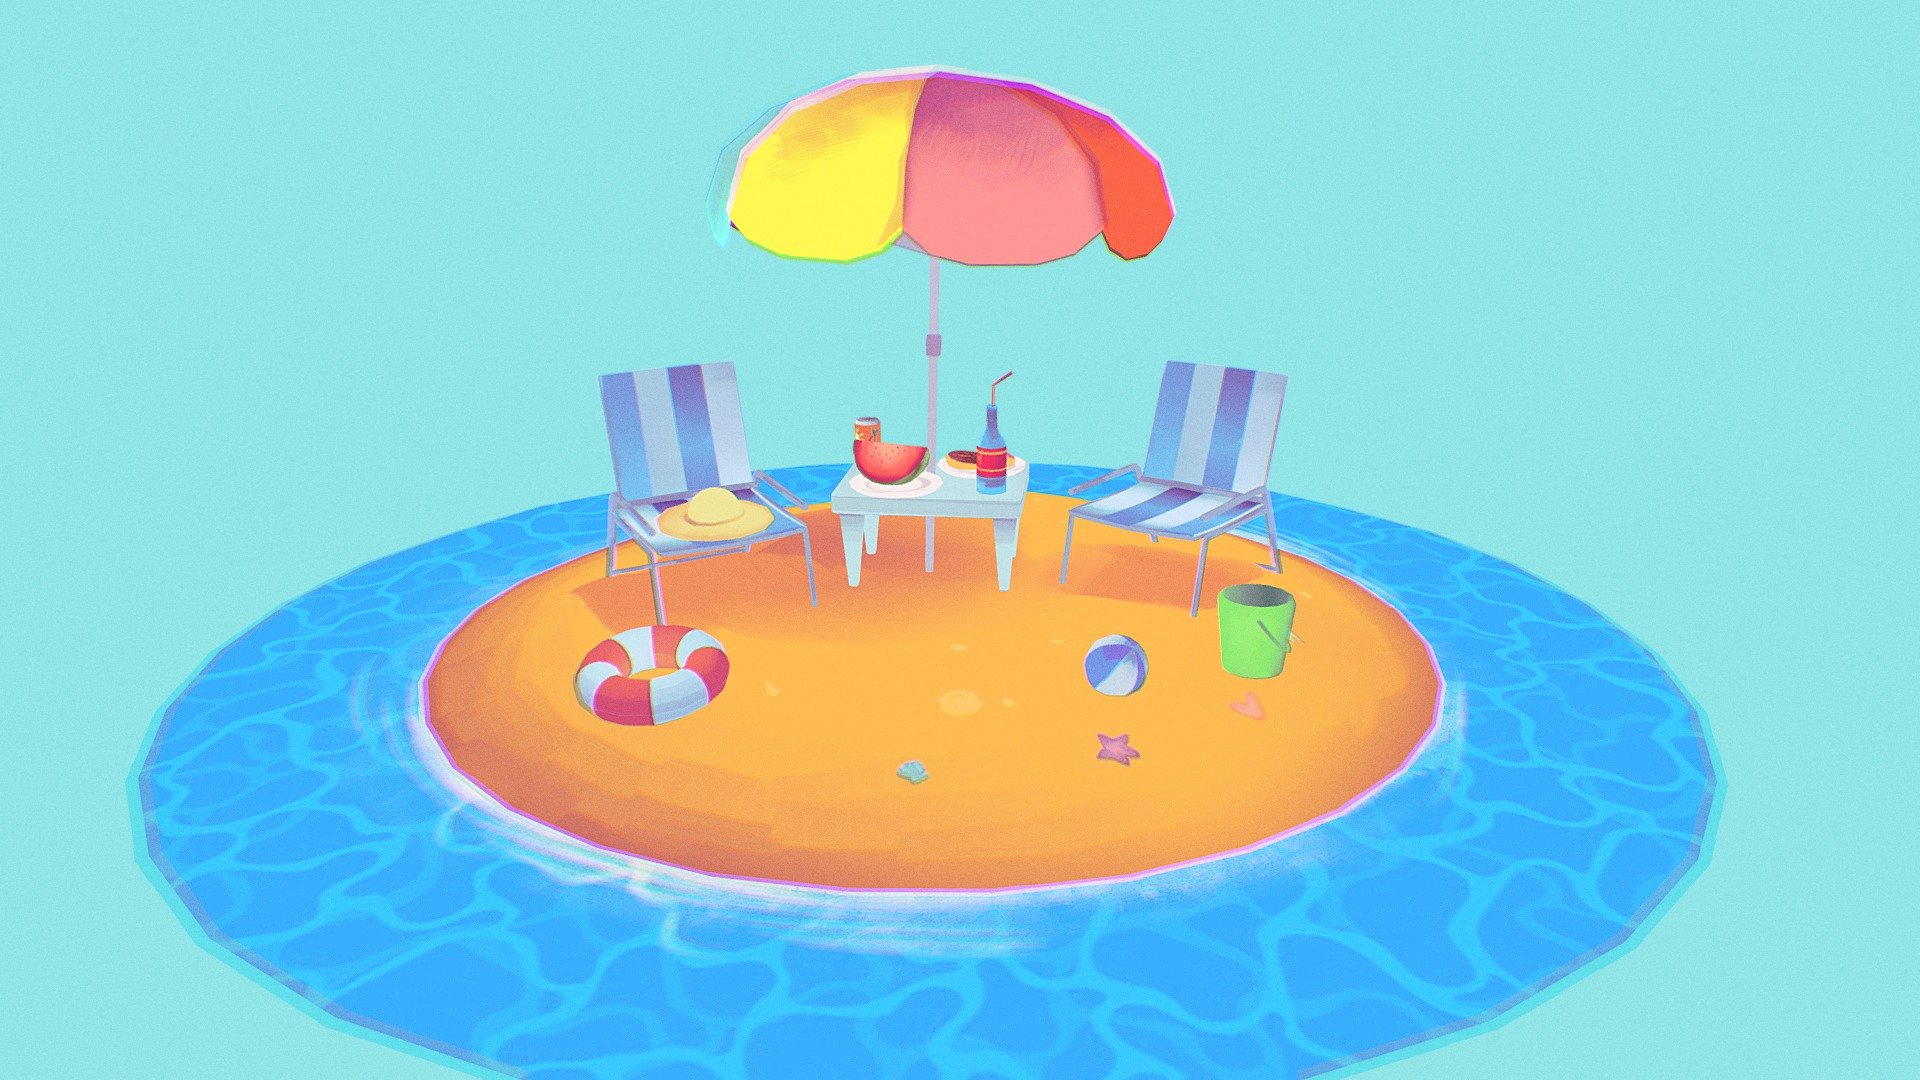 Stylized beach scene - 3D model by graouh 3d model